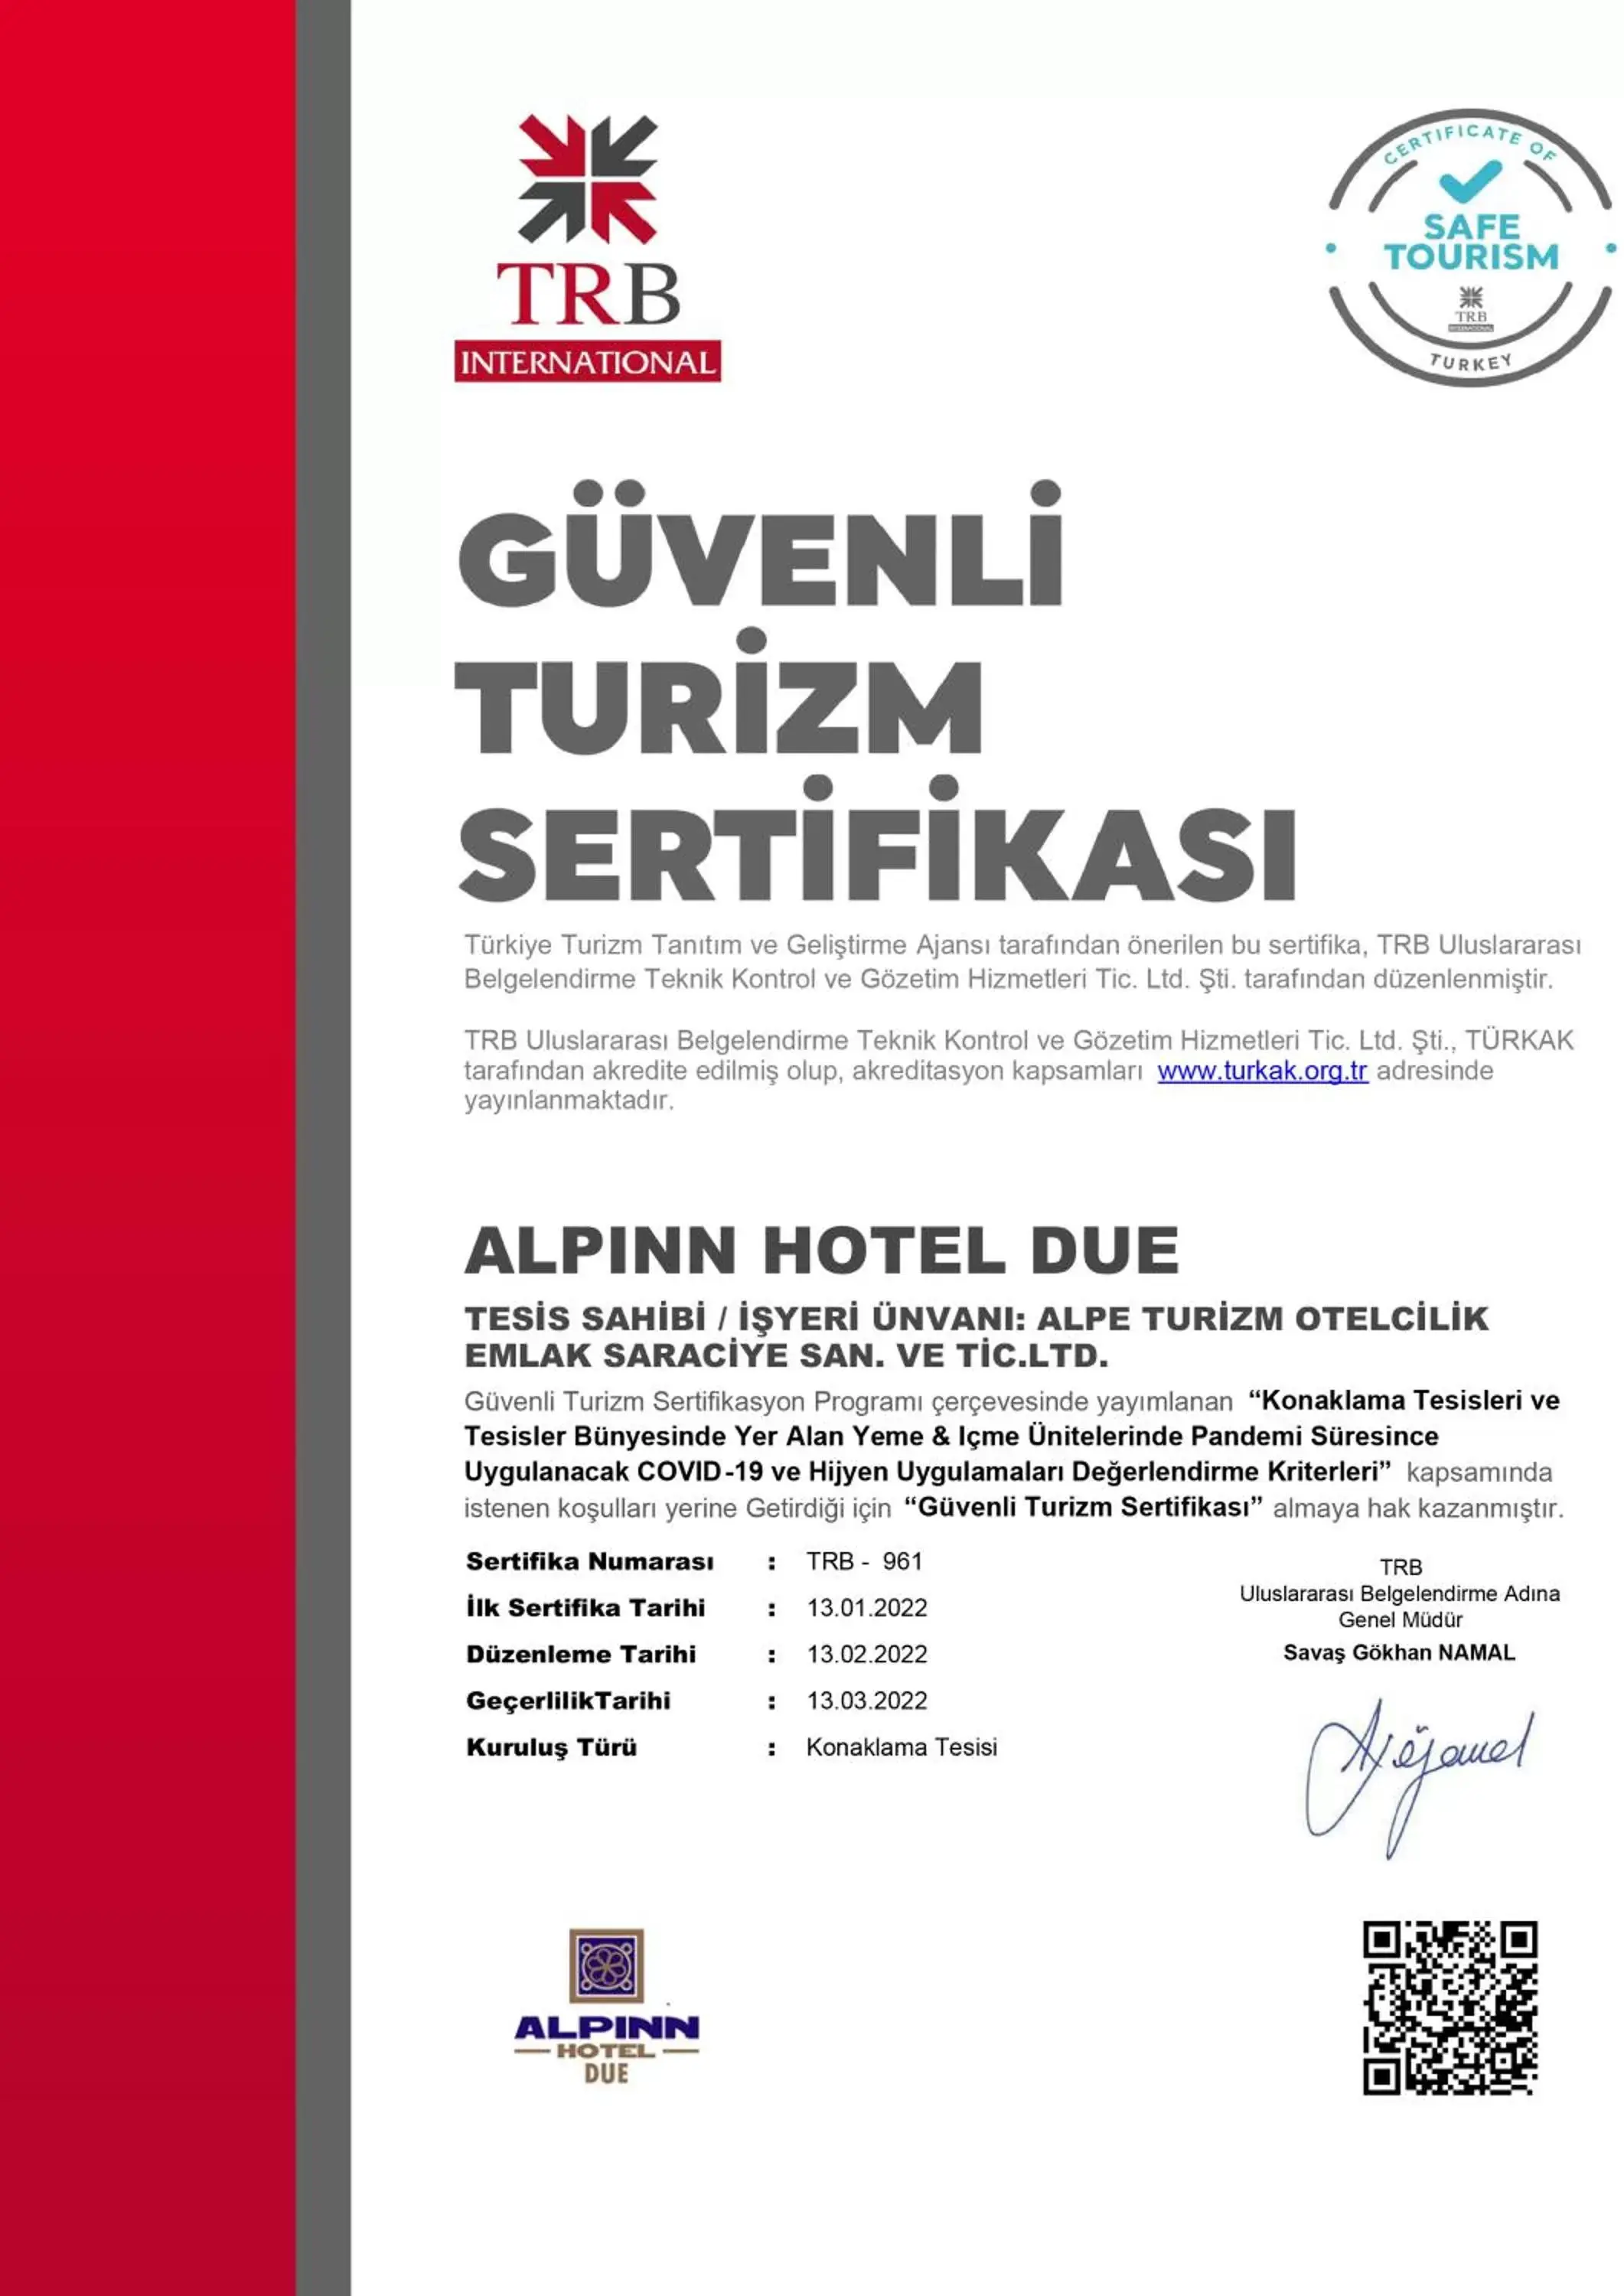 Logo/Certificate/Sign in Alpinn Hotel DUE